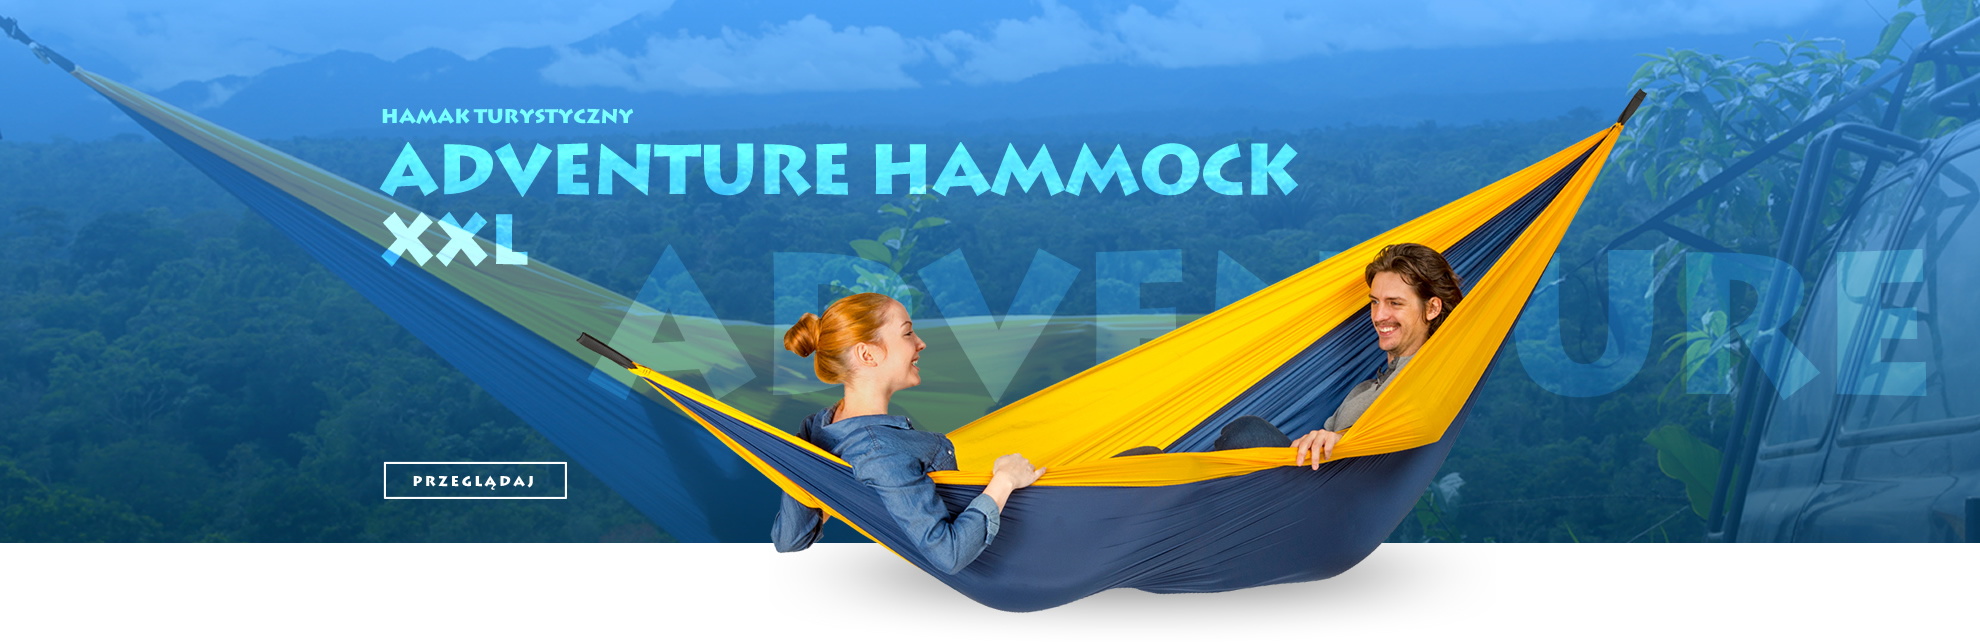 Adventure hammock XXL